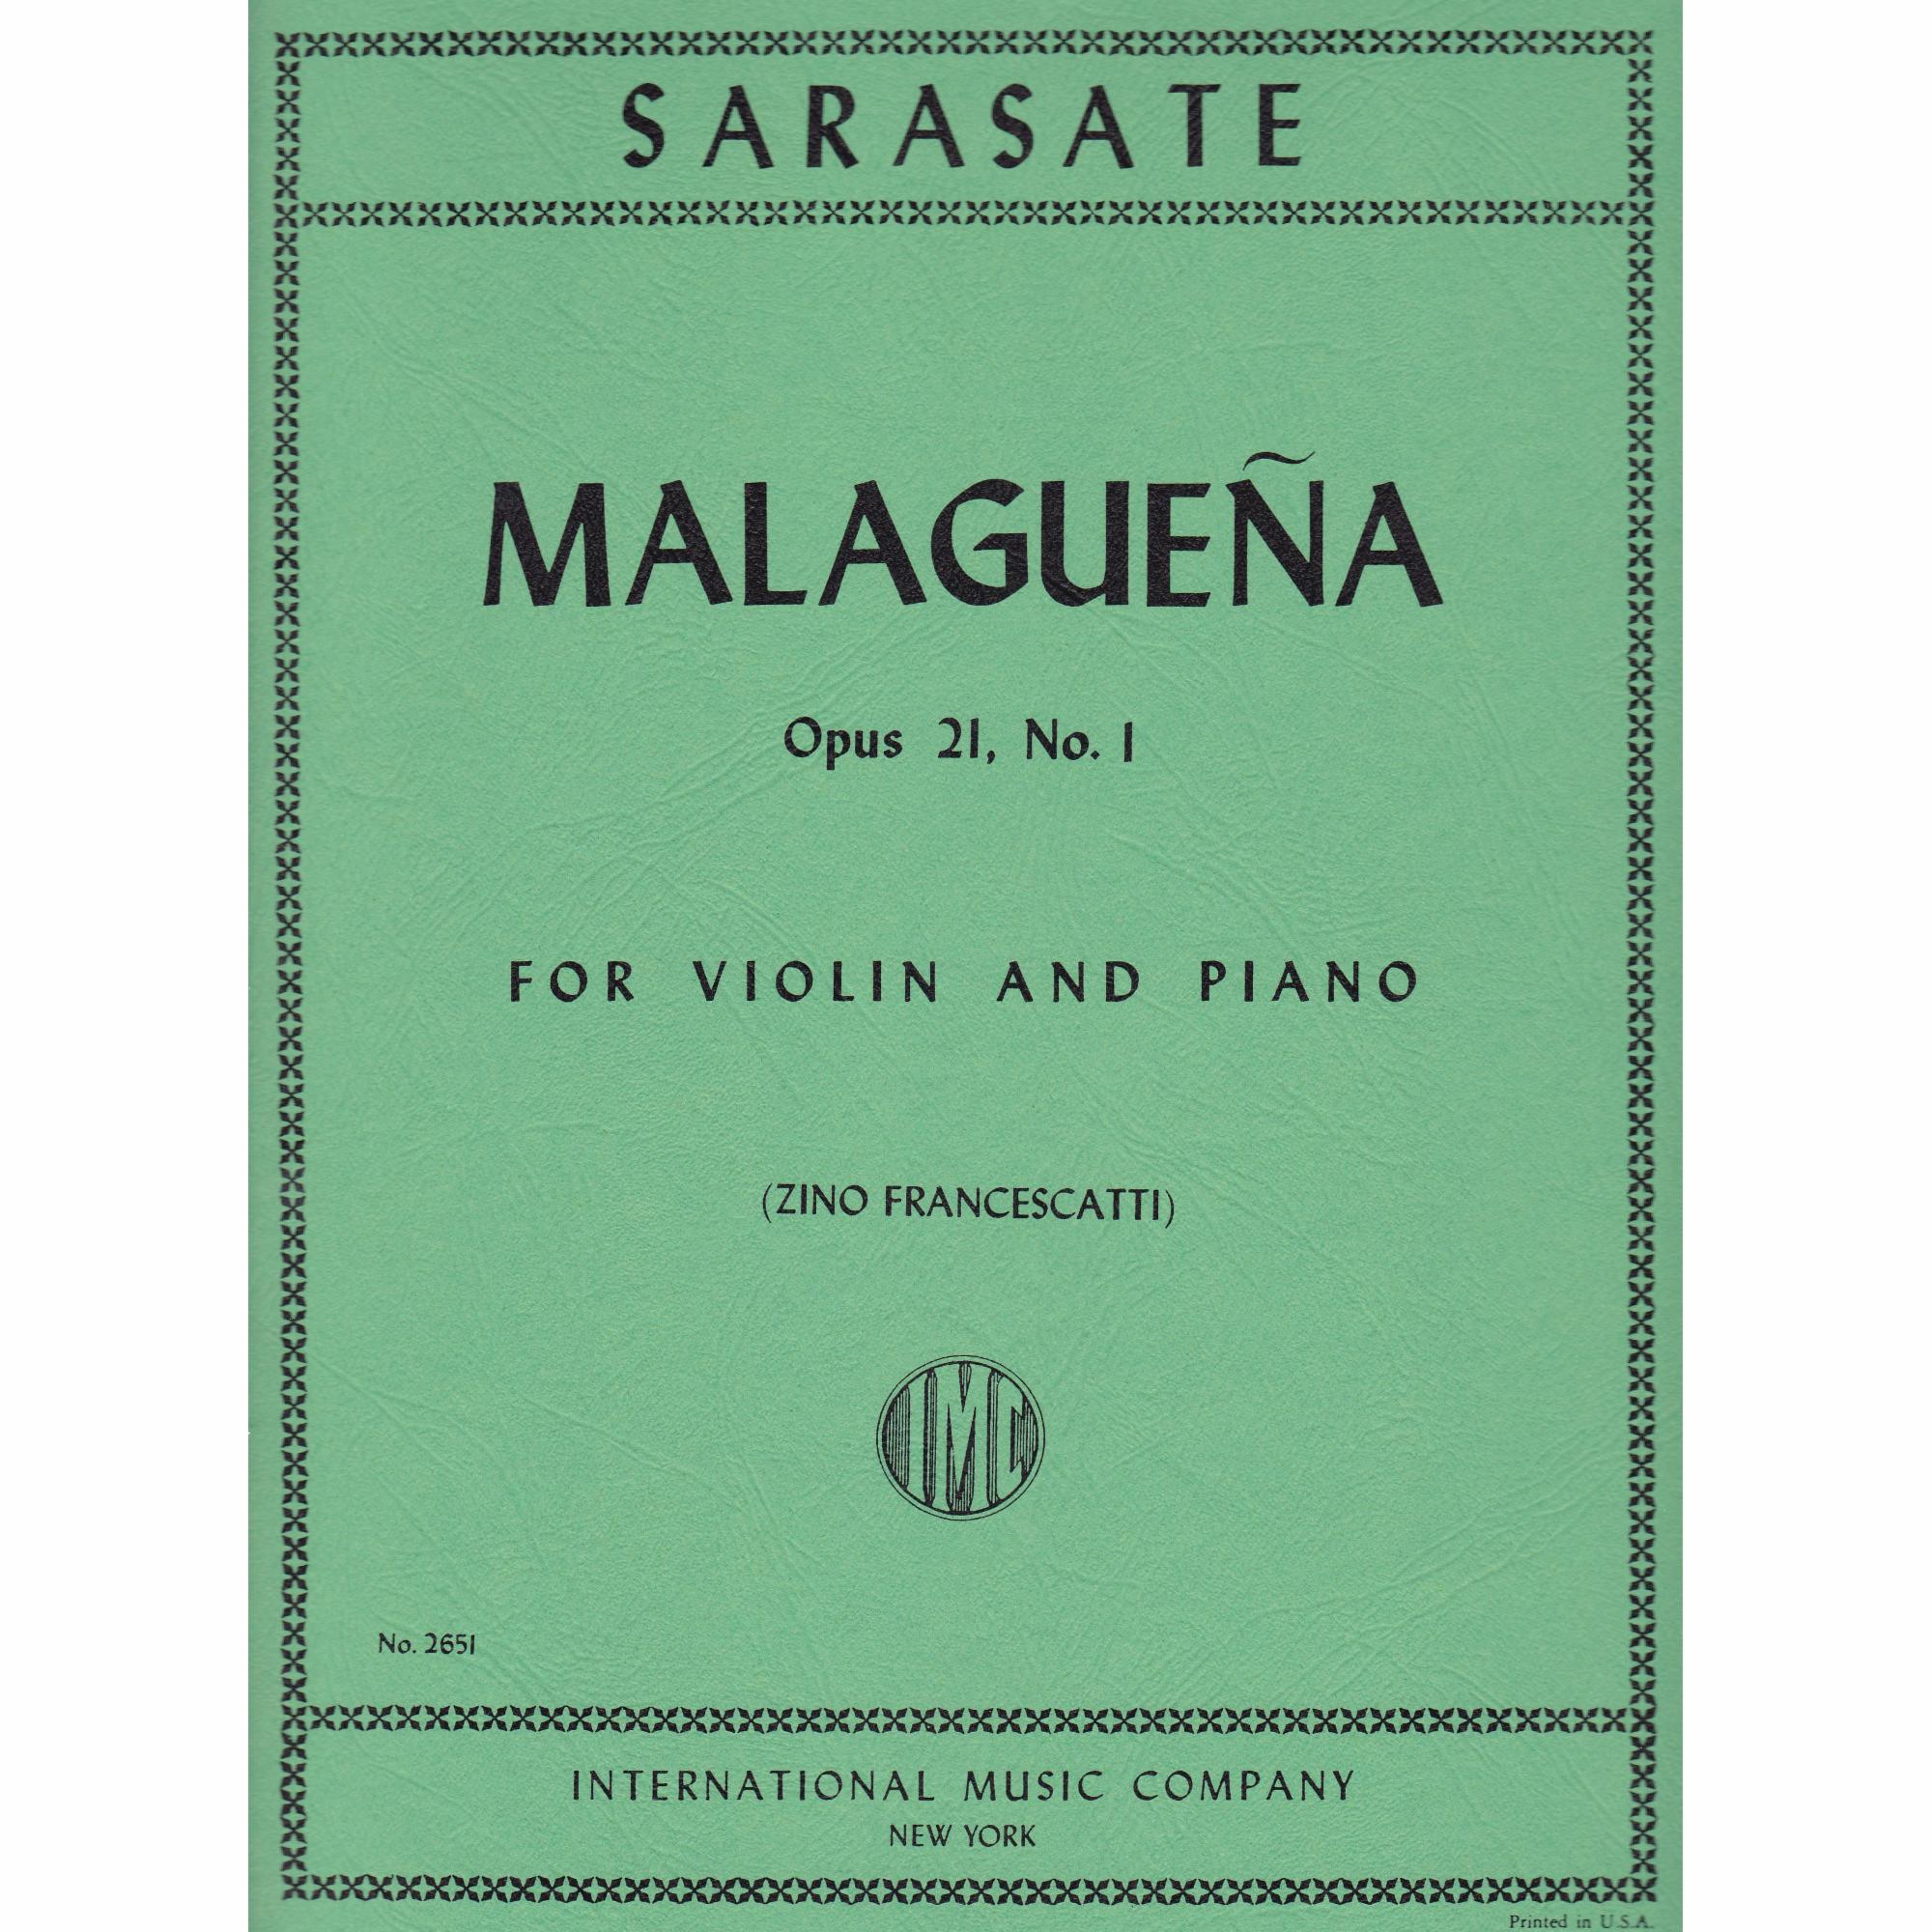 Malaguena for Violin and Piano, Op. 21, No. 1